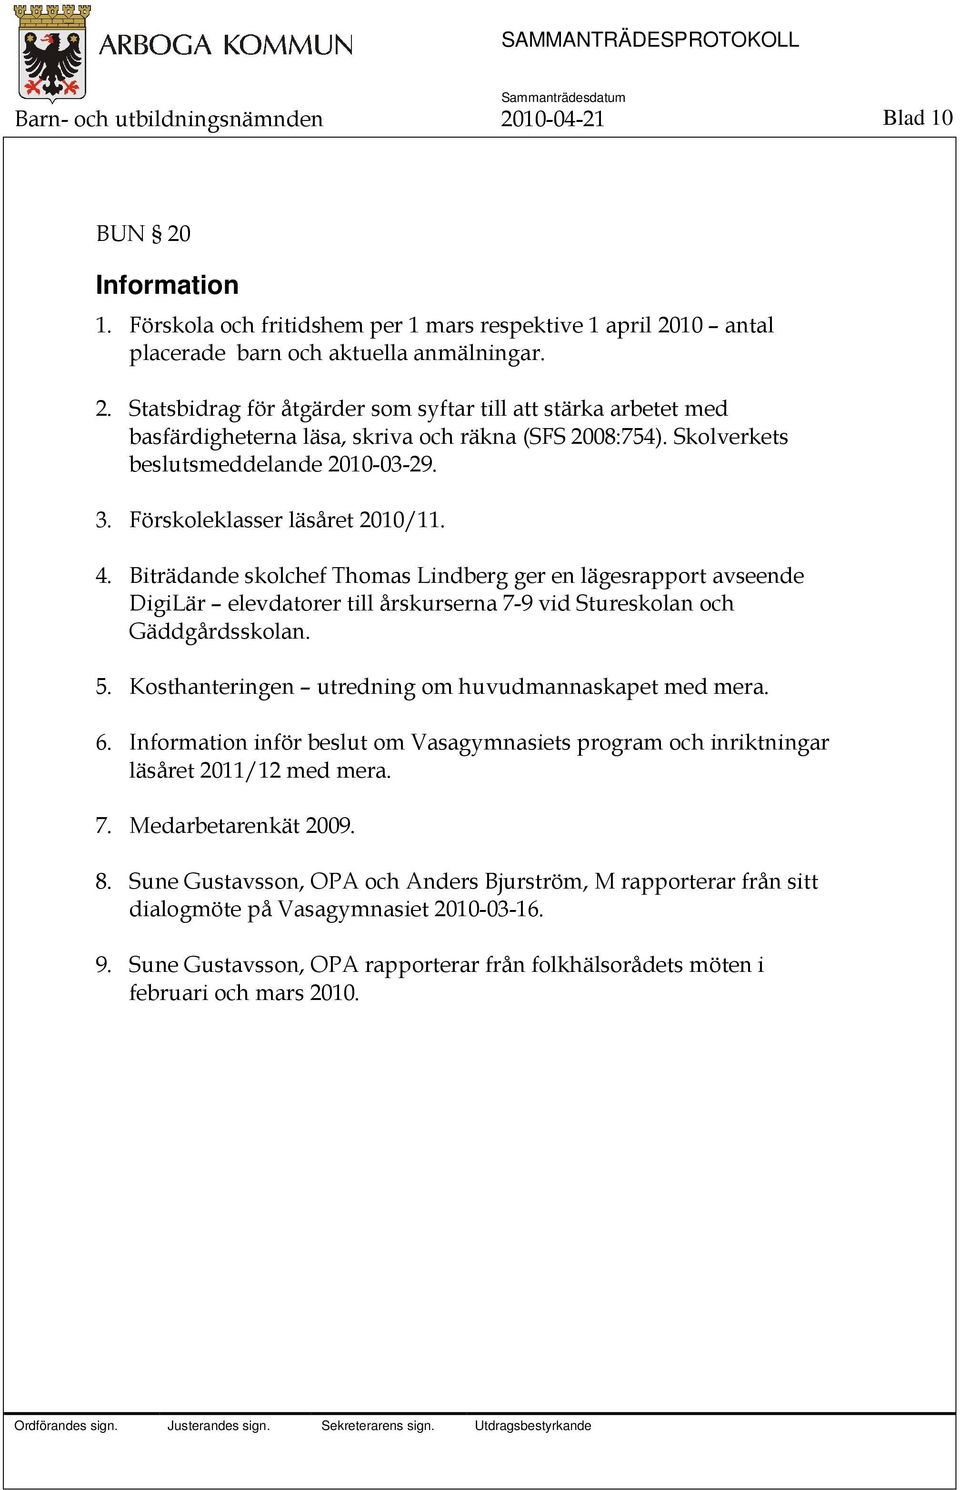 Biträdande skolchef Thomas Lindberg ger en lägesrapport avseende DigiLär elevdatorer till årskurserna 7-9 vid Stureskolan och Gäddgårdsskolan. 5.